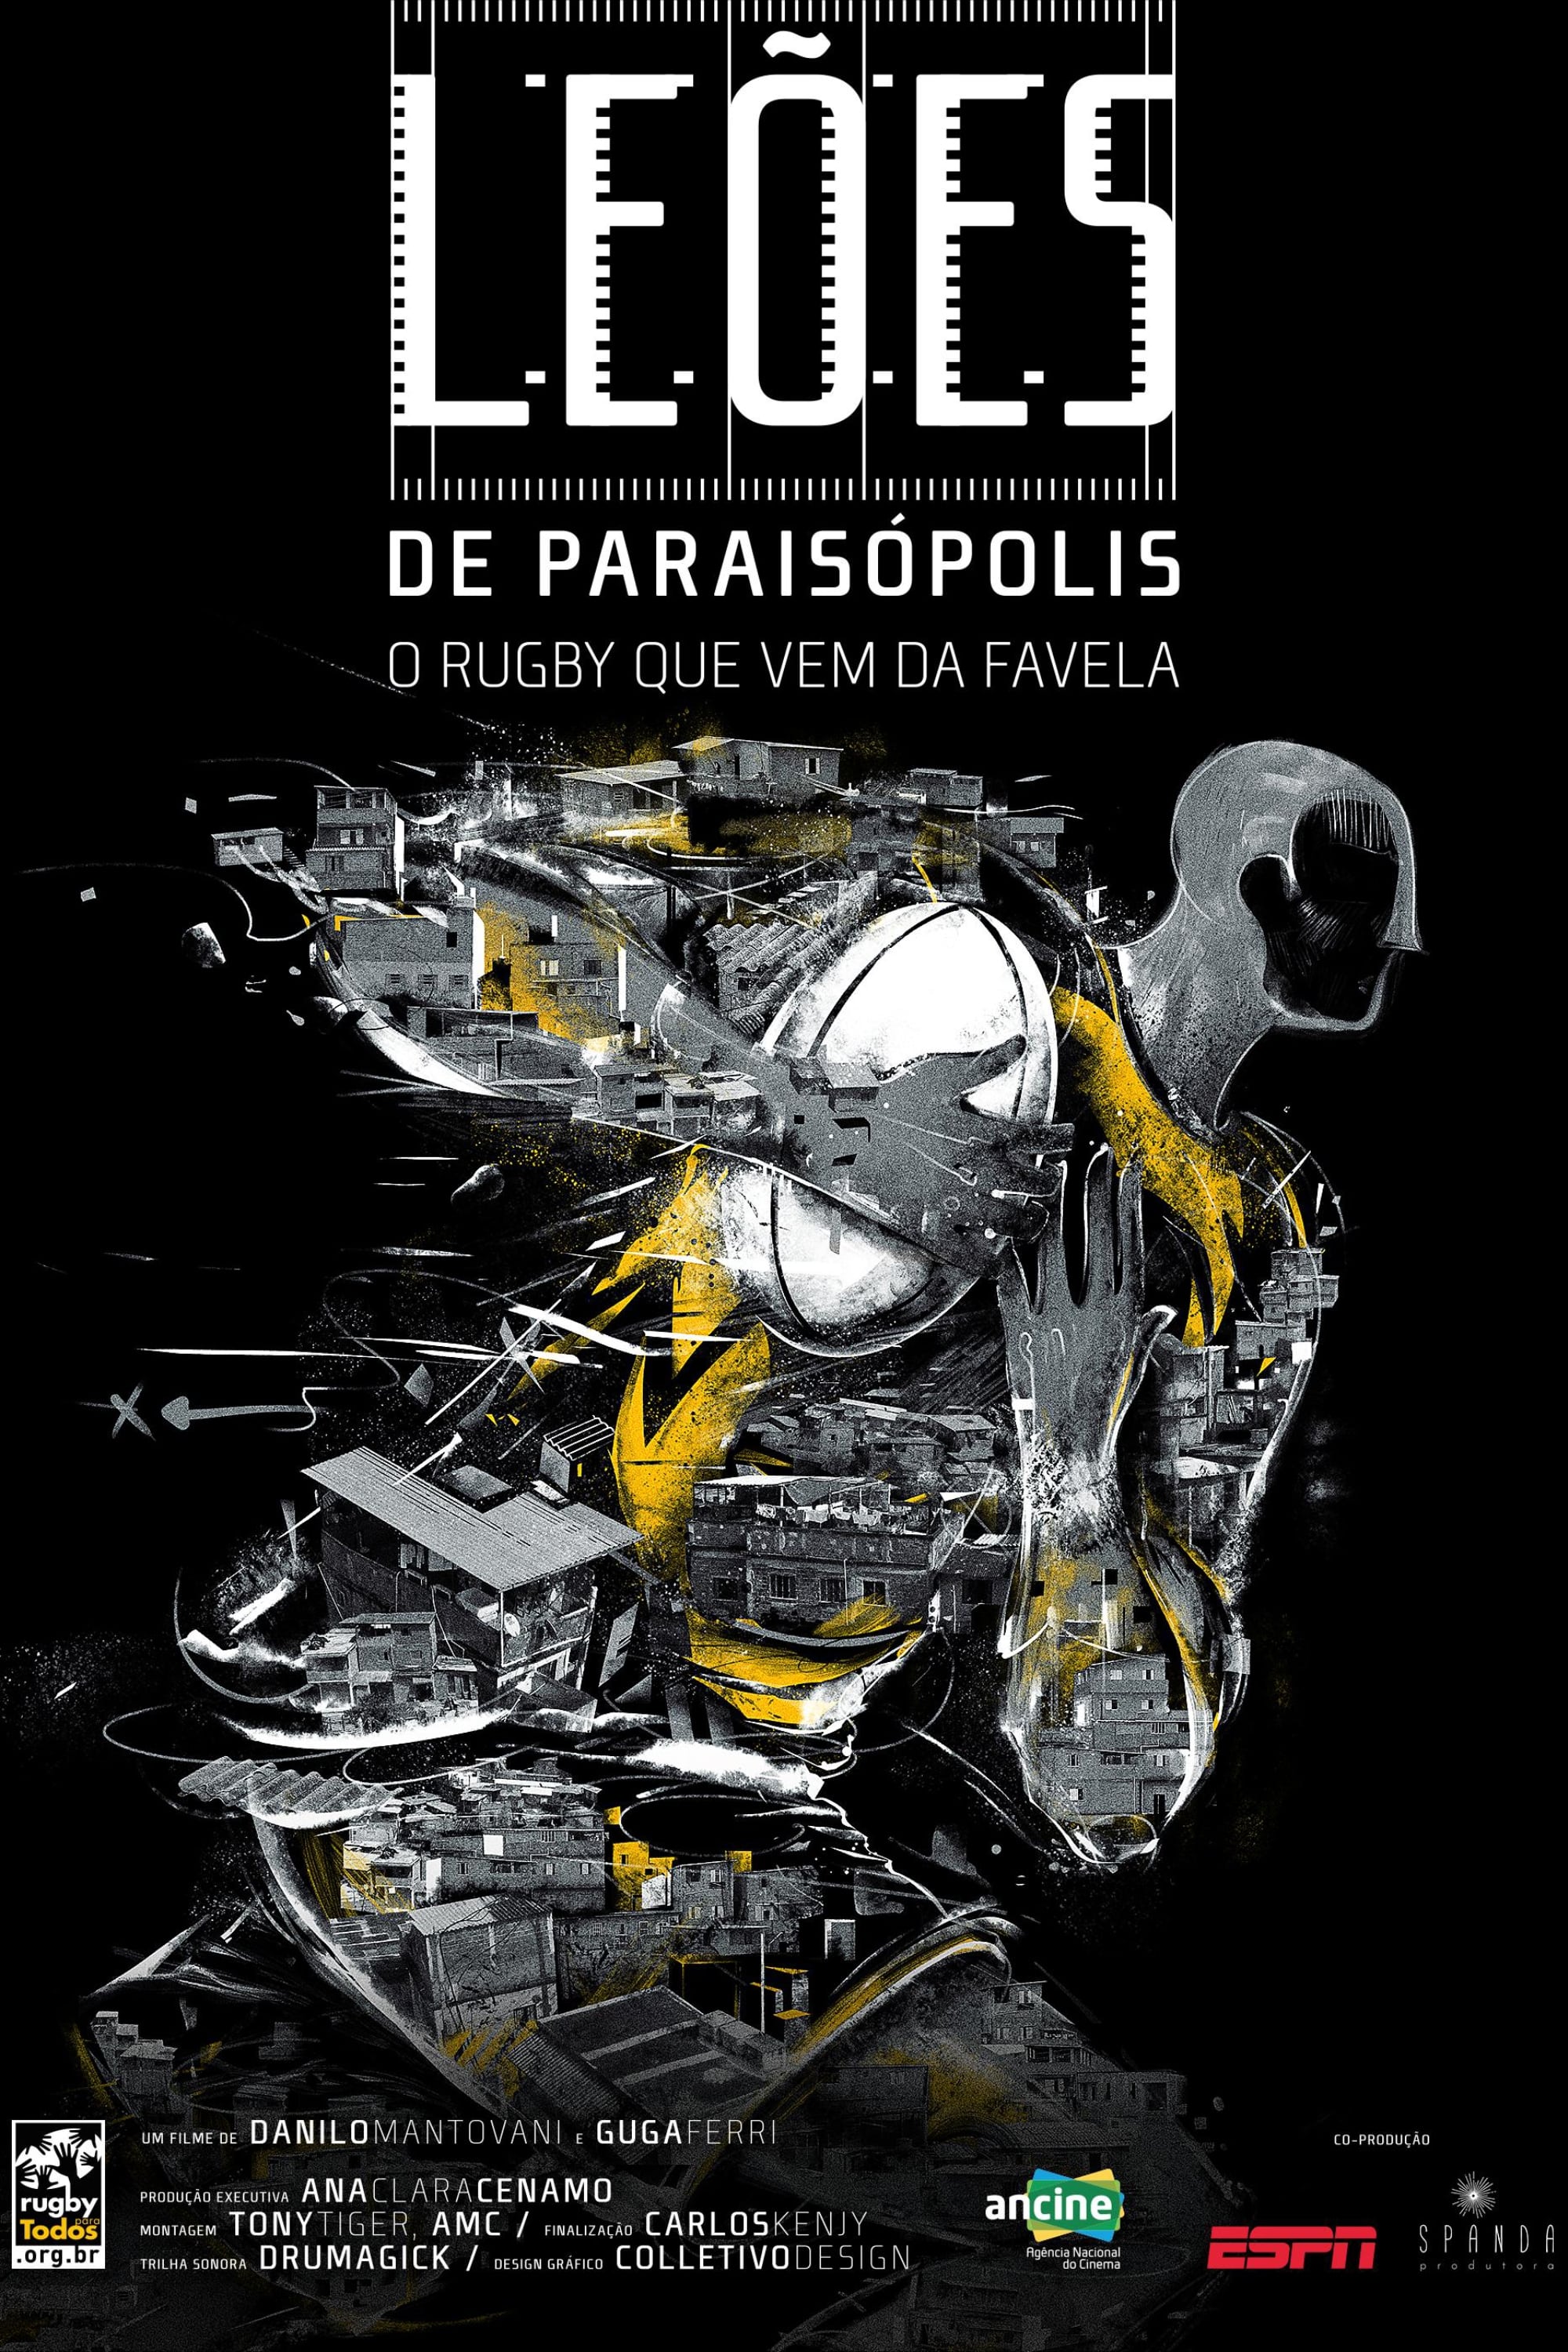 Leões de Paraisópolis: O Rugby Que Vem da Favela